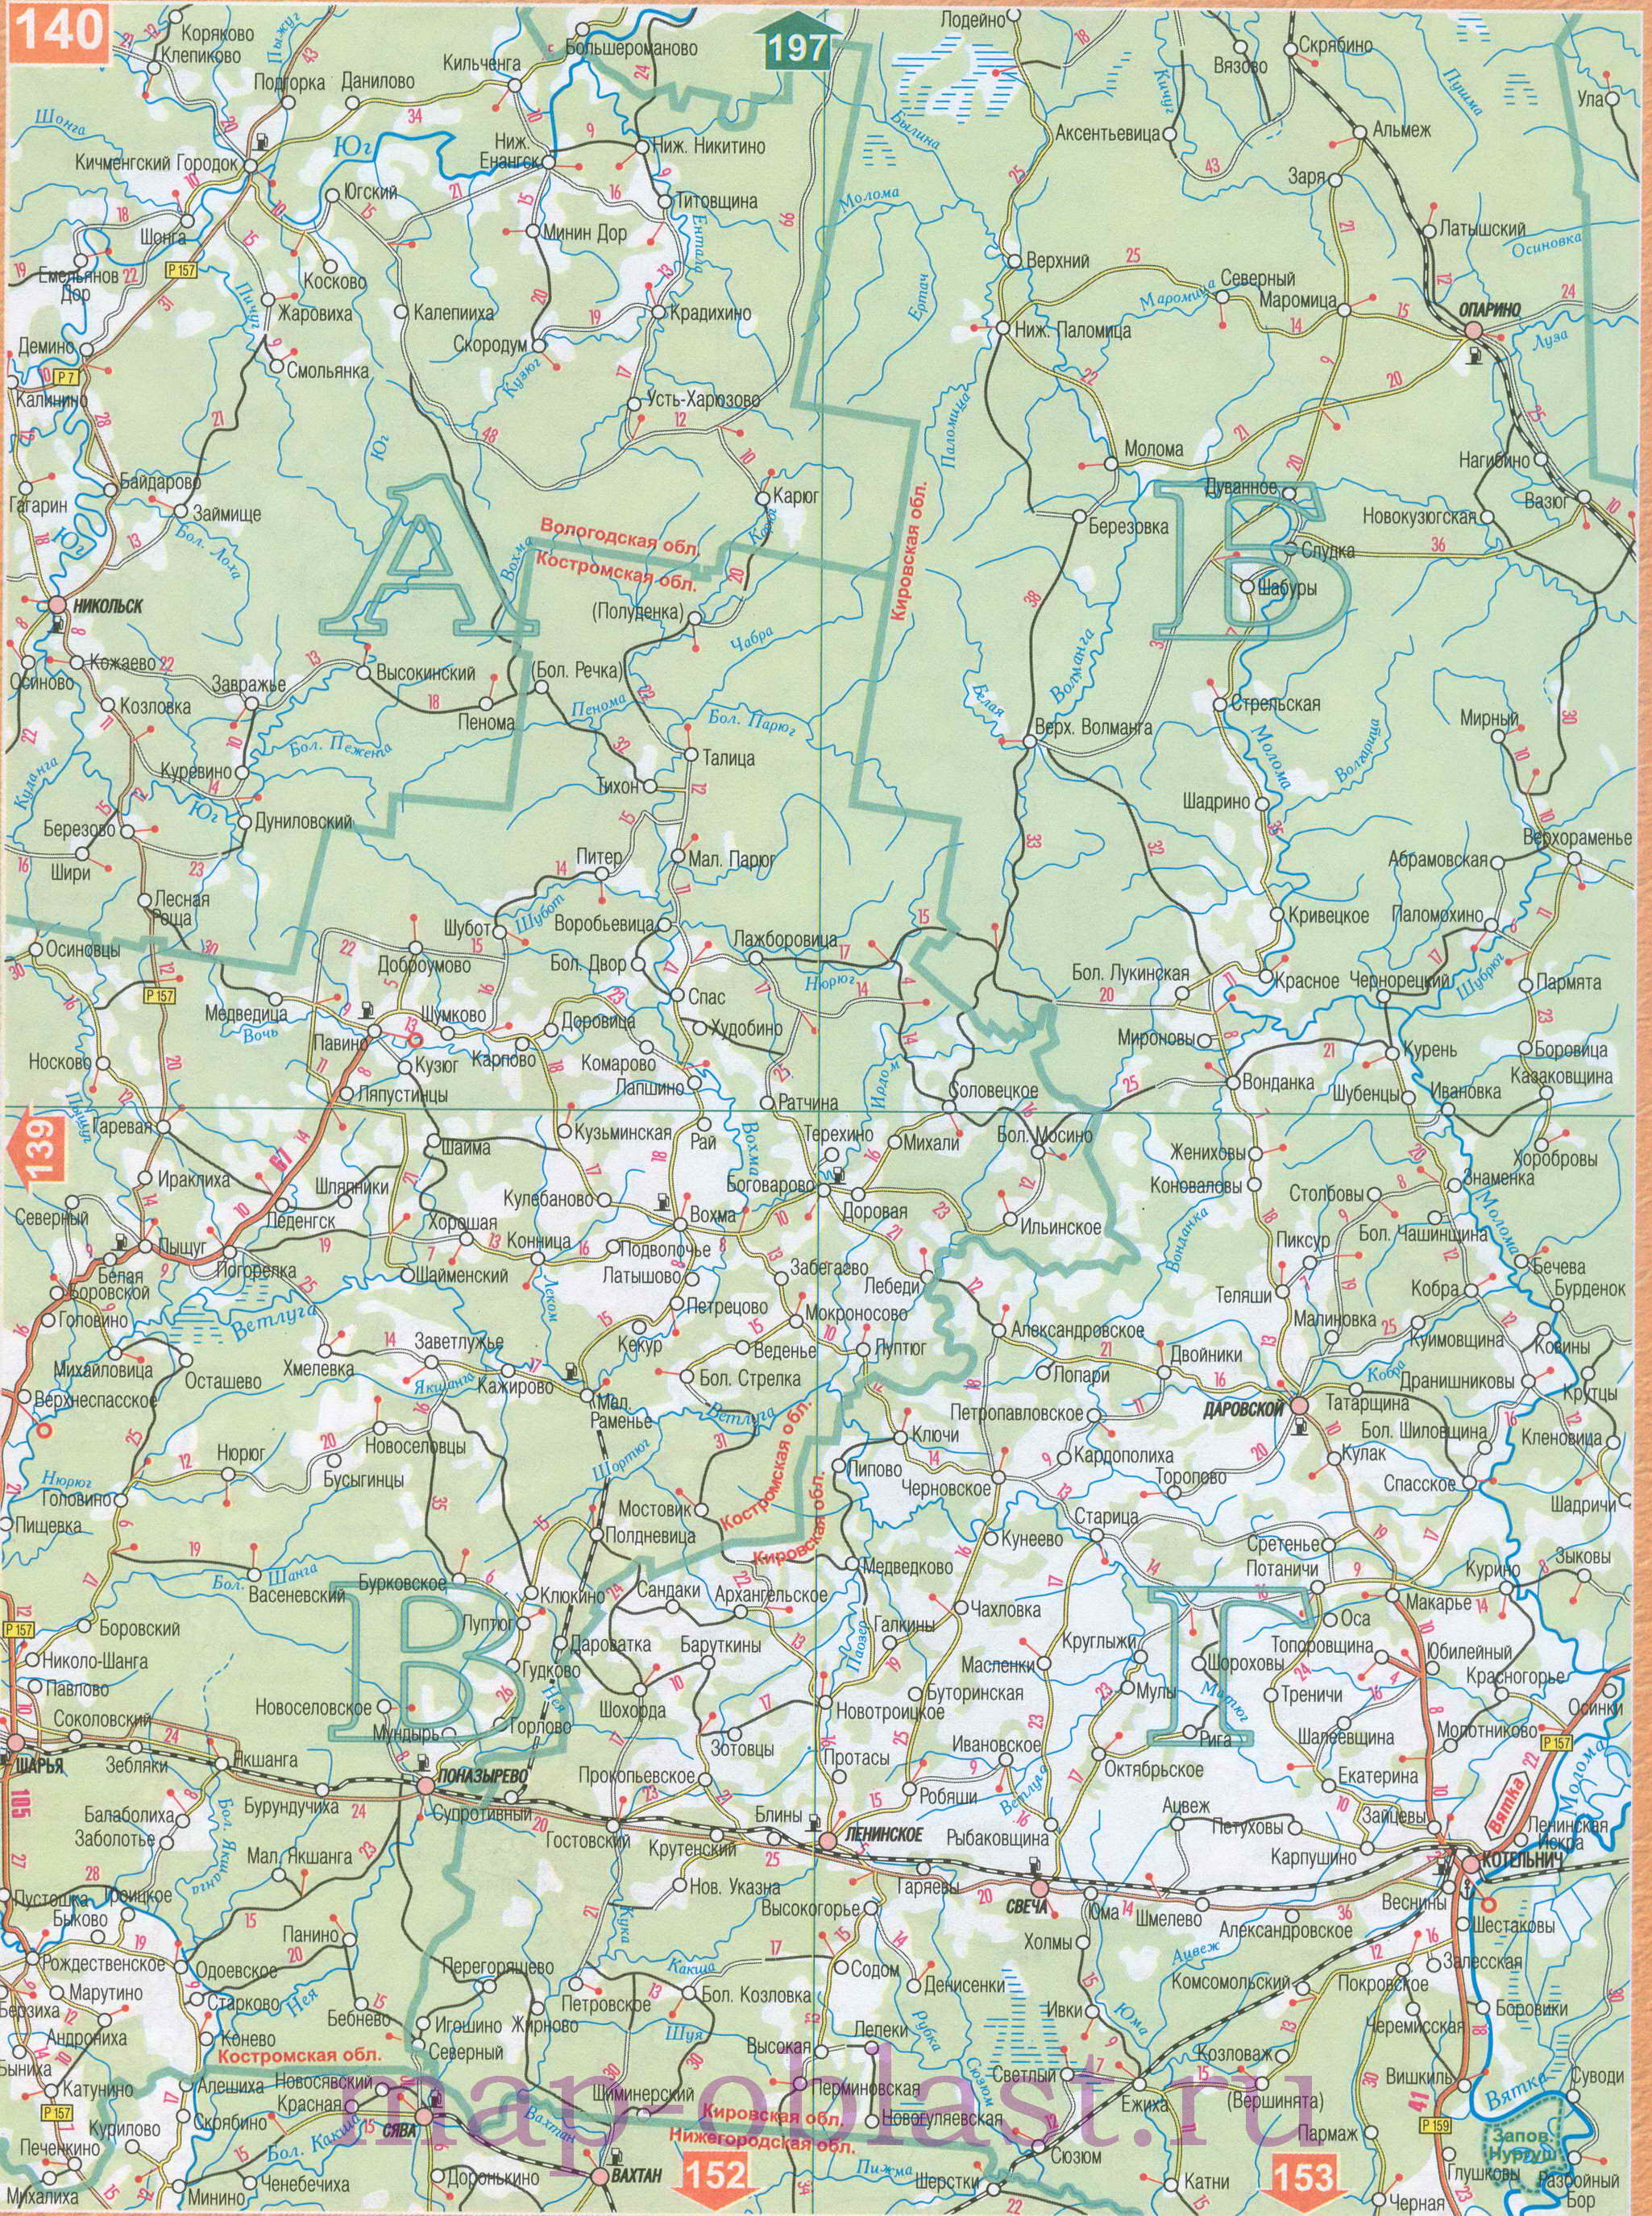 Карта Волго-Вятского экономического района. Подробная карта автодорог Волго-Вятского региона России, C0 - 